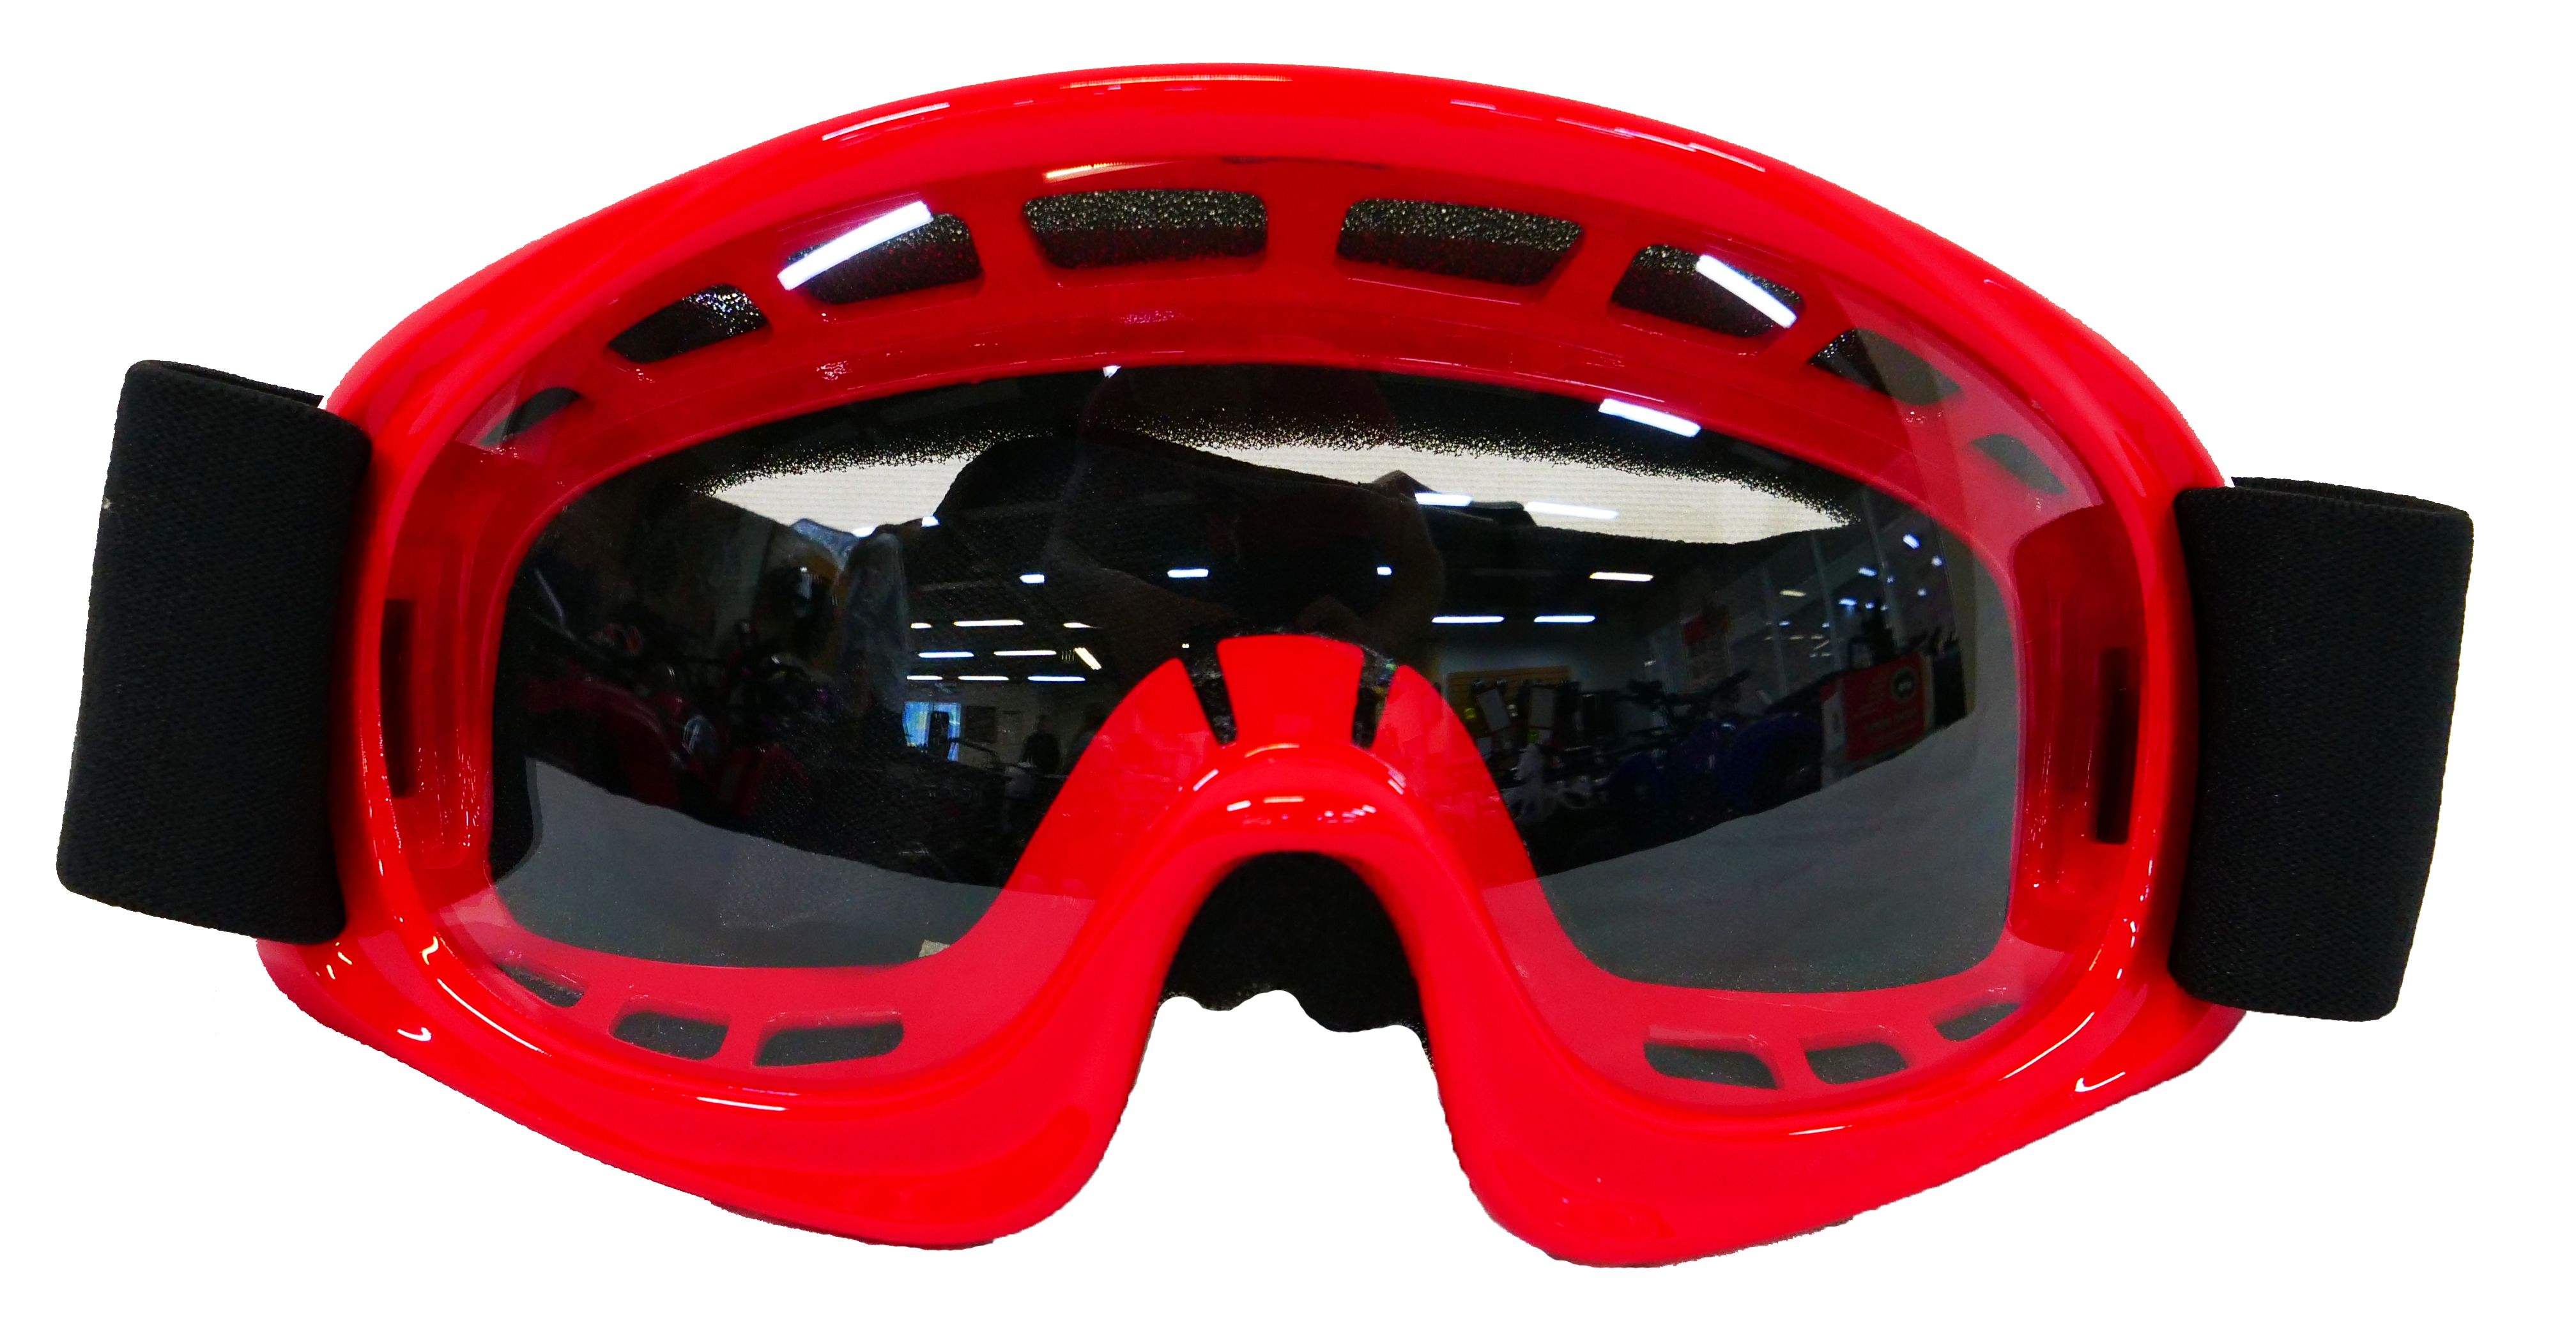 Очки детские Racing Goggle красные